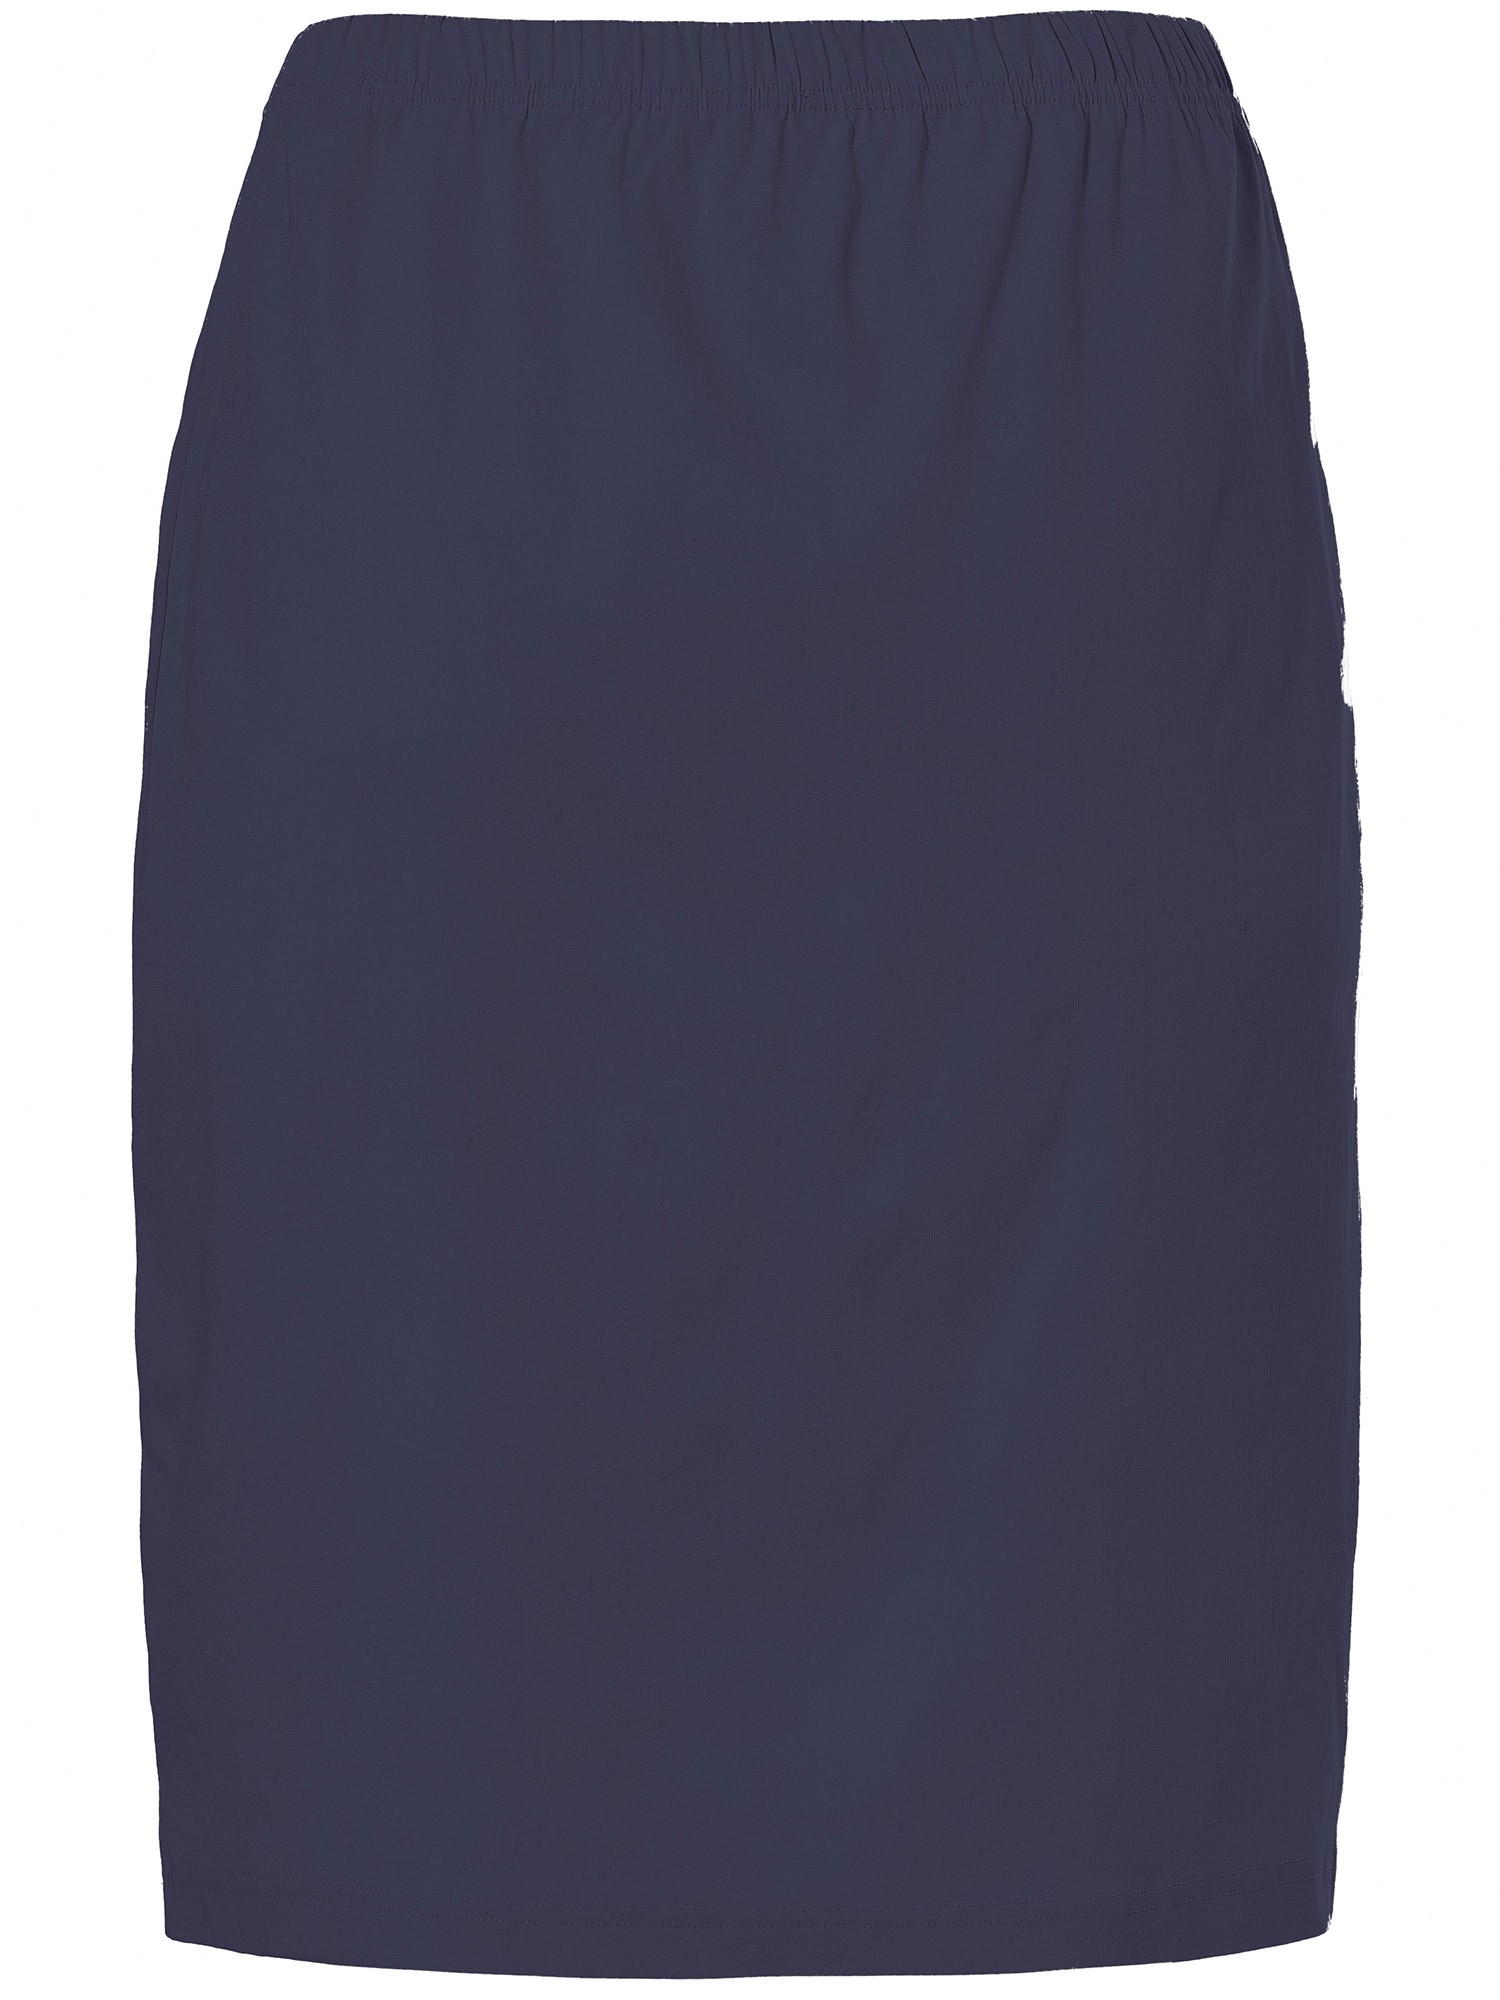 Clare - Mörkblå kjol i stretchig viskos fra Gozzip